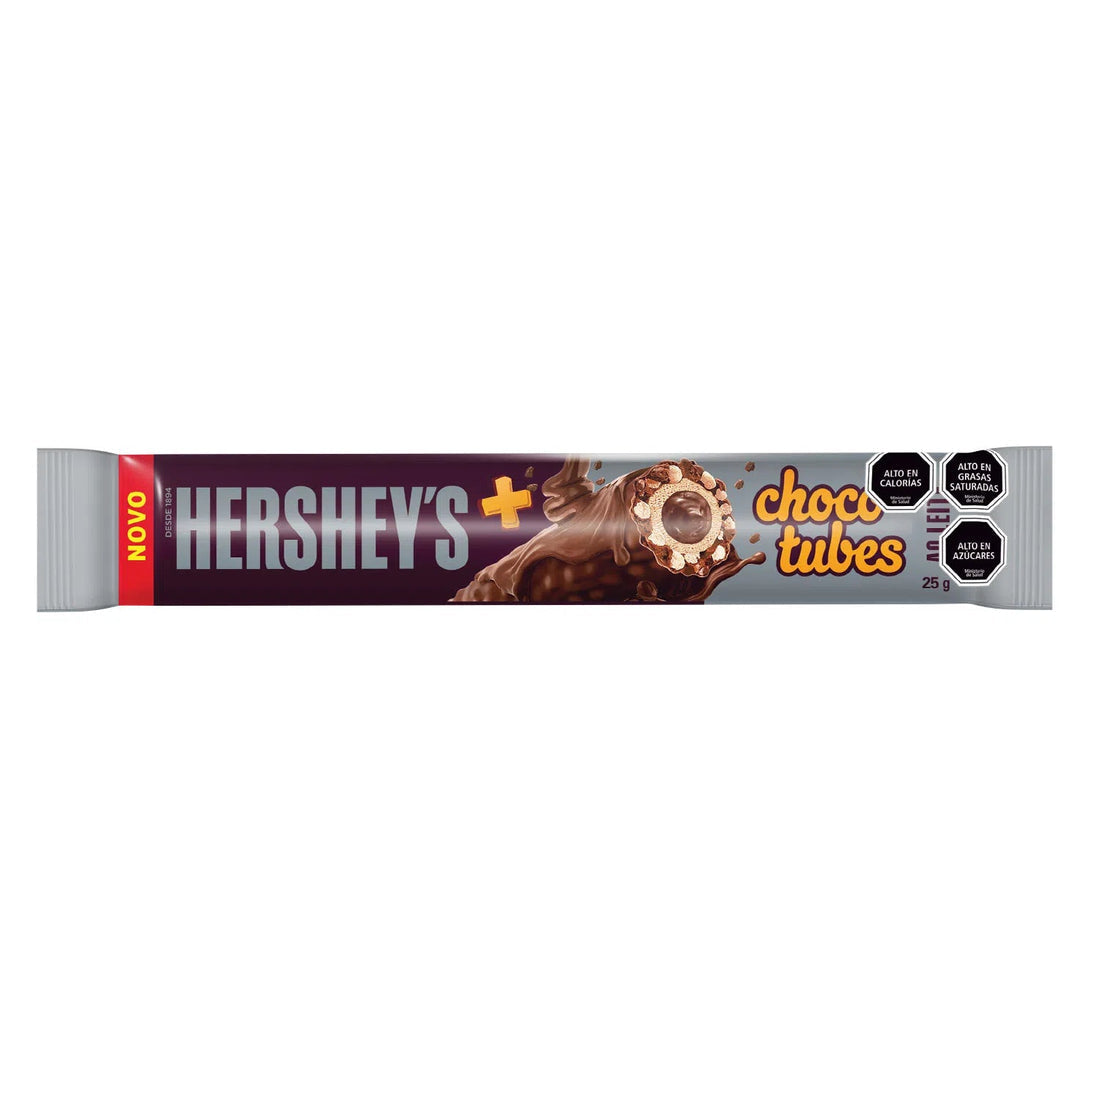 Hersheys Choco Tubes